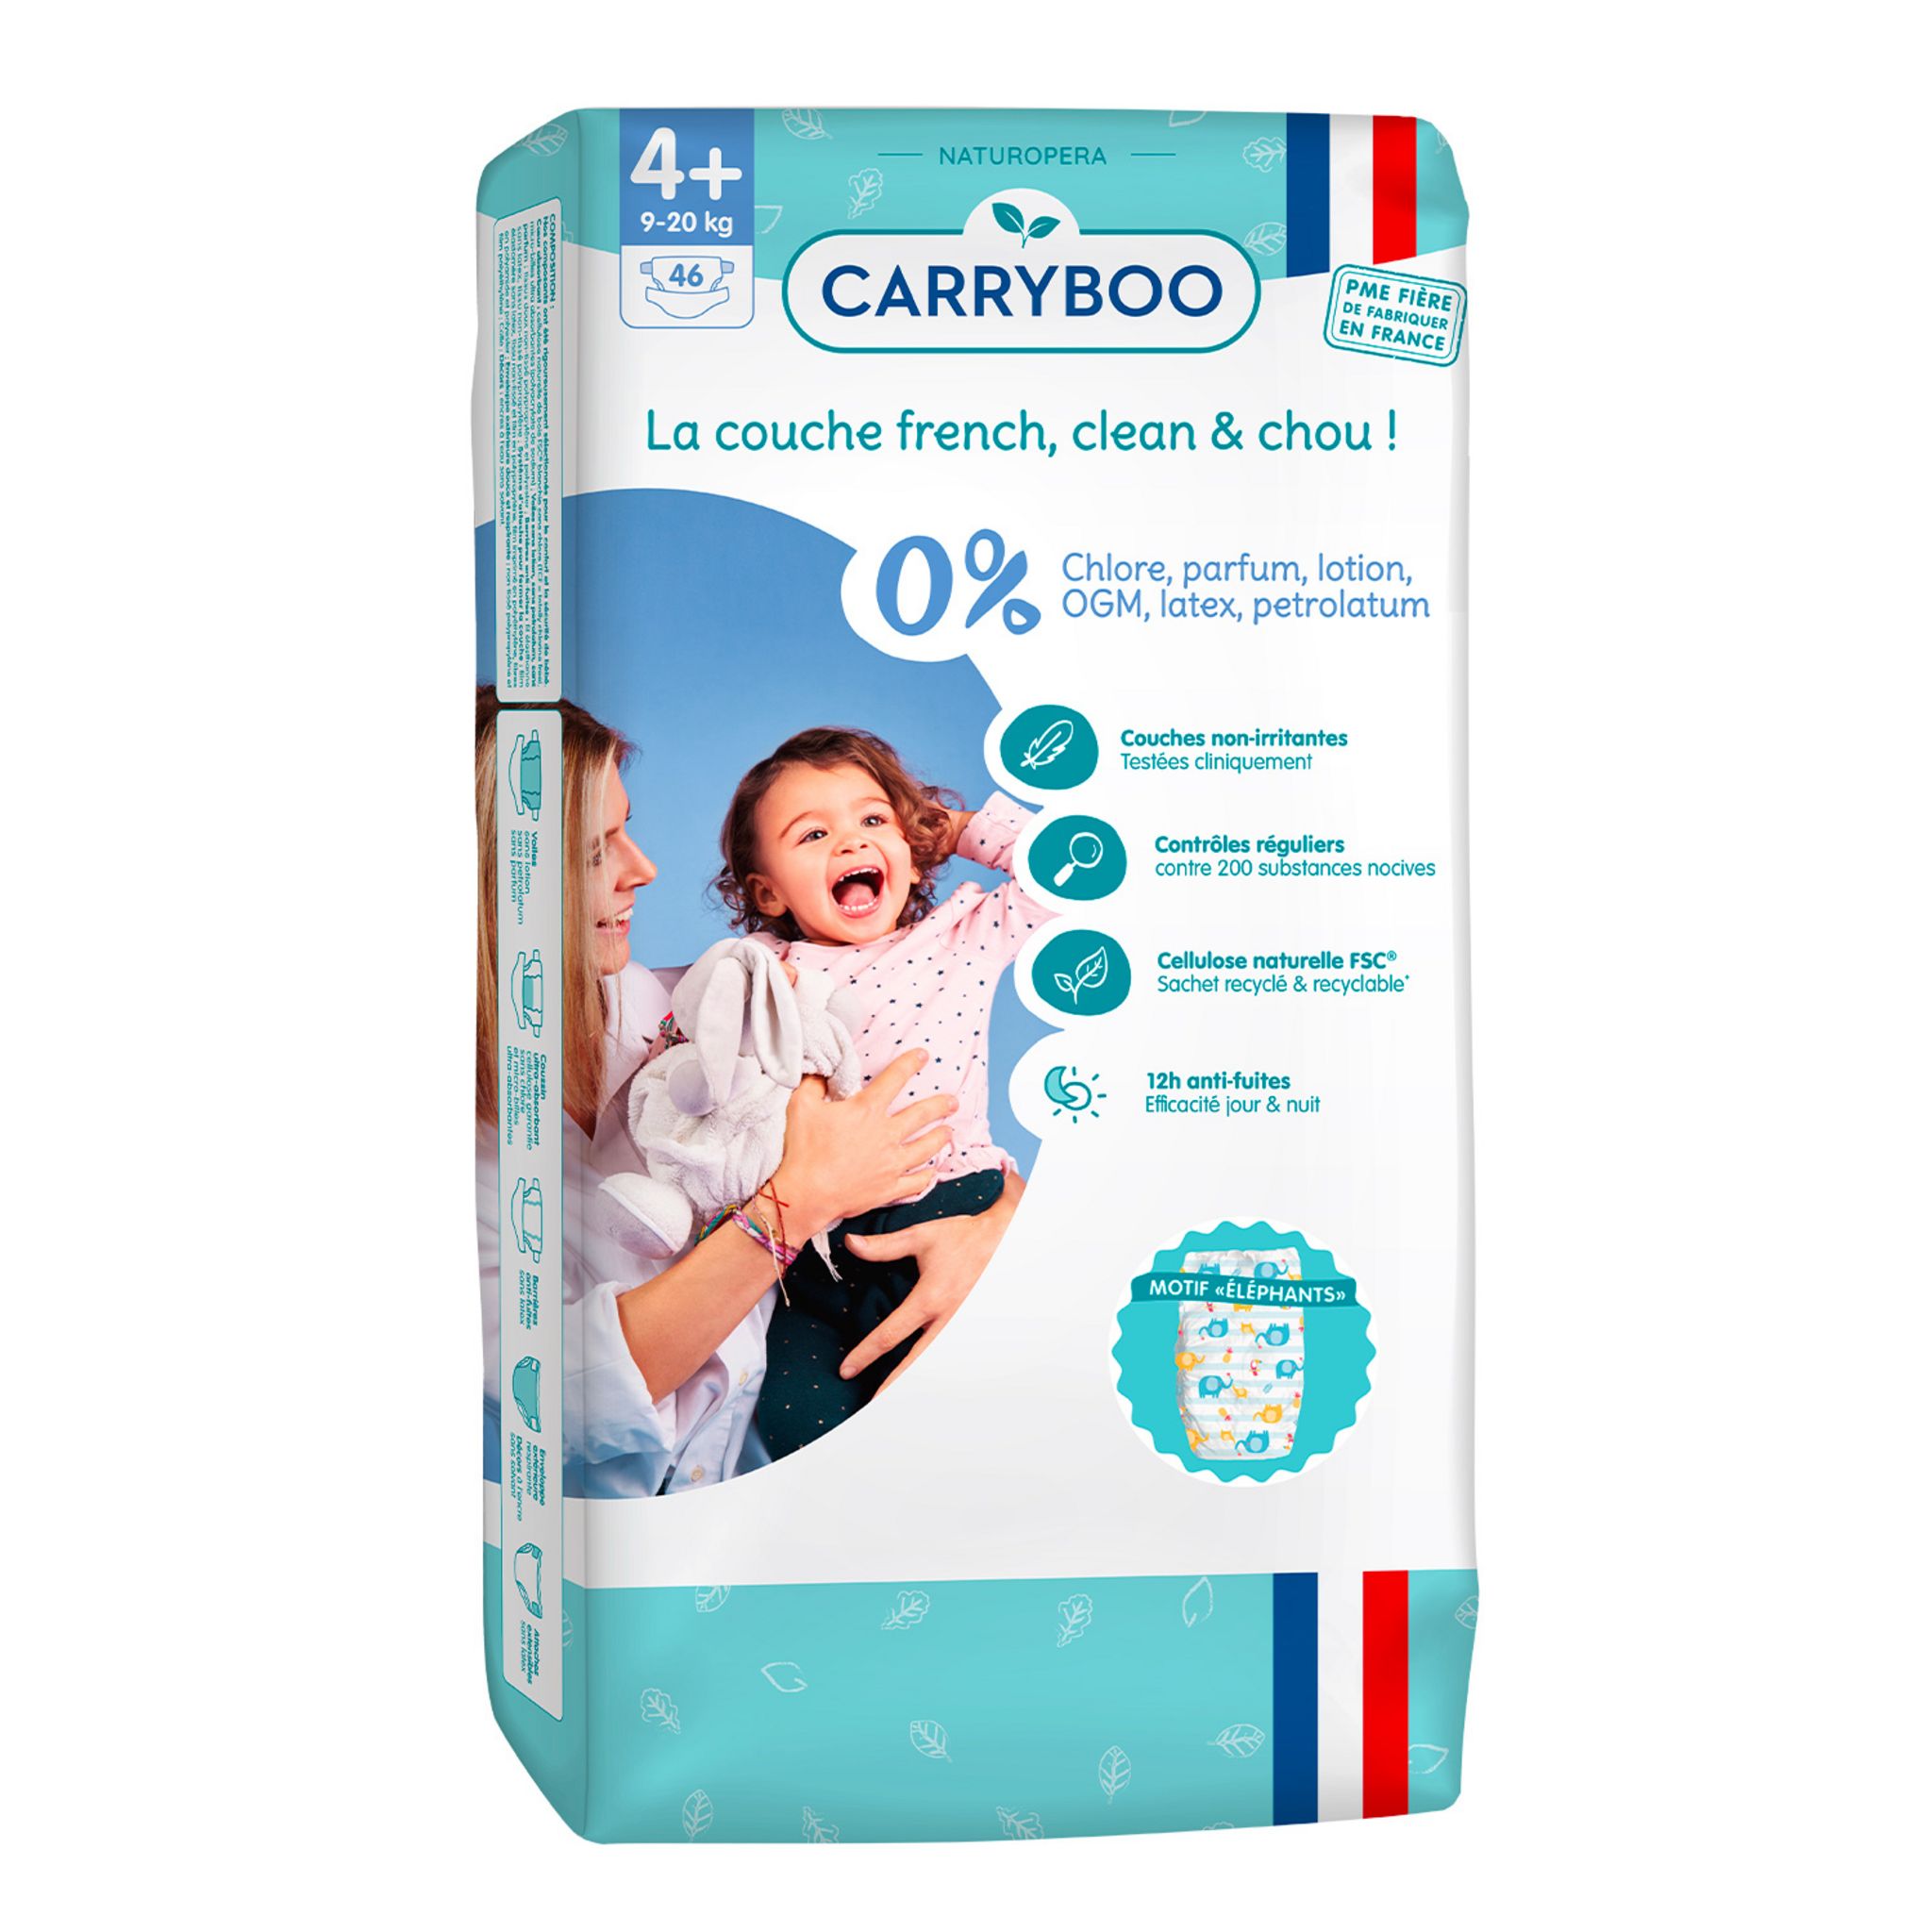 CARRYBOO BIO Family pads rectangles de coton 100% bio ultra doux 180 cotons  pas cher 